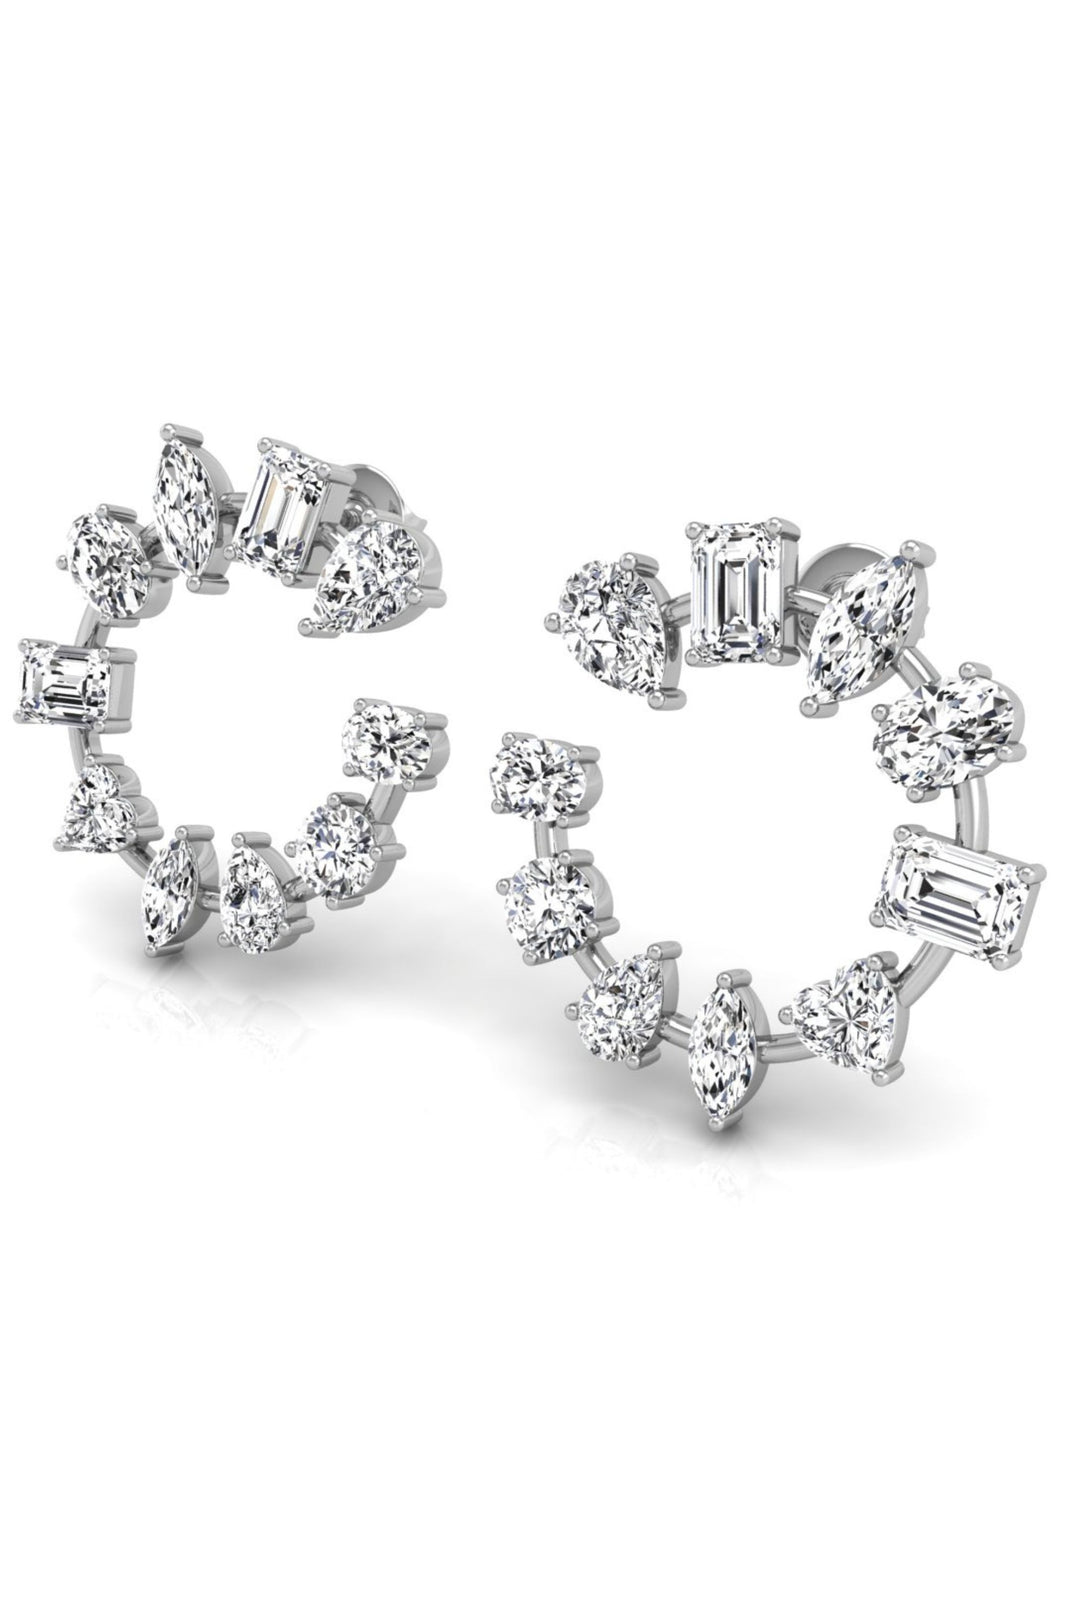 Multi Shaped Circle Diamond Moissanite Earrings for Women